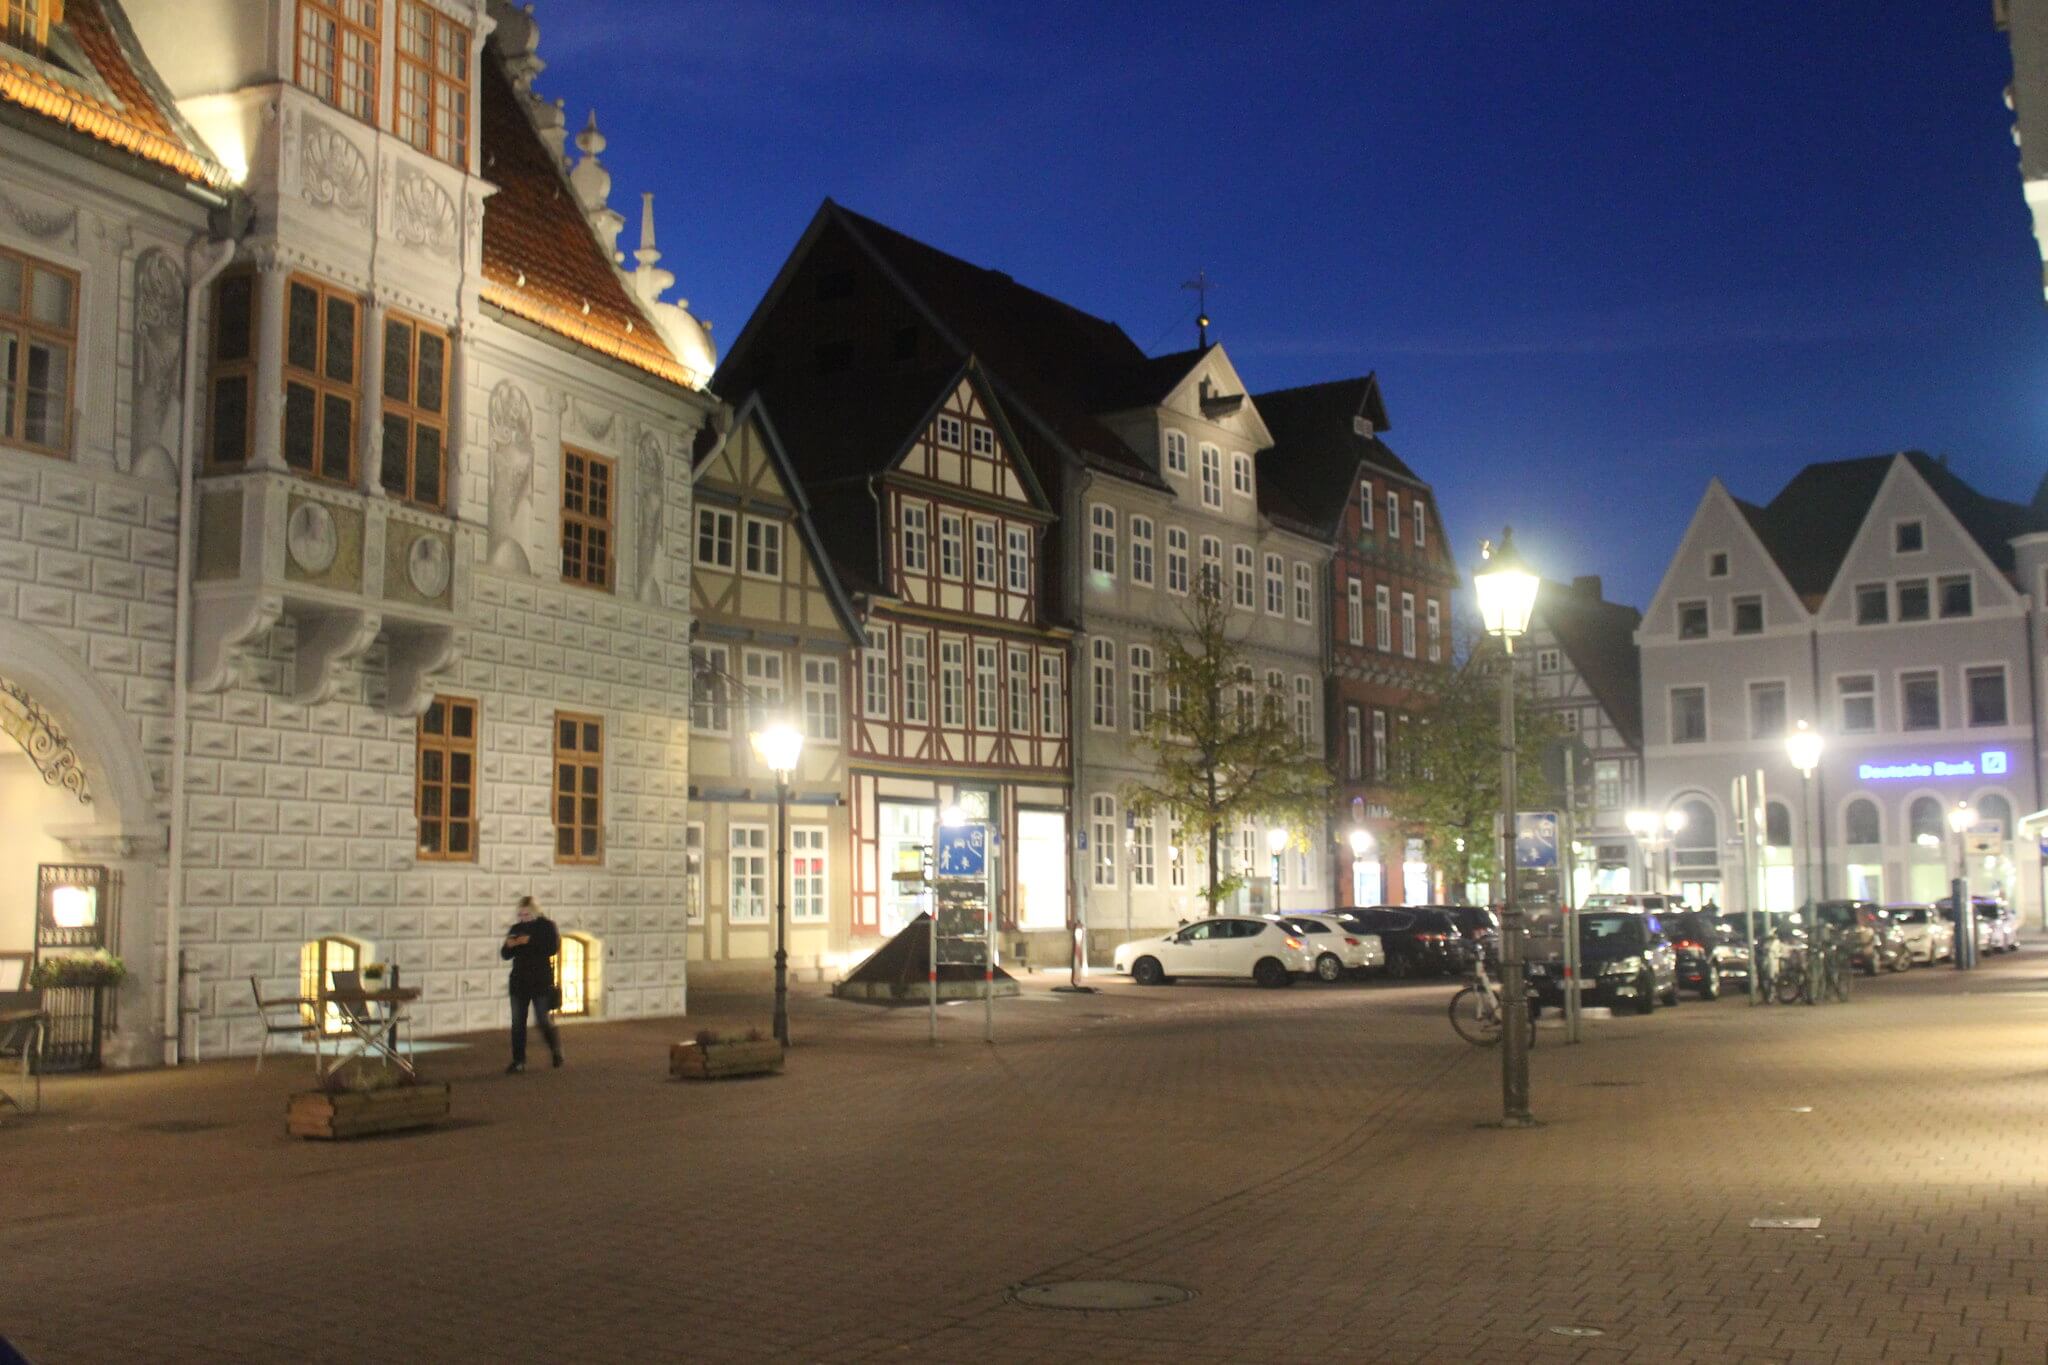 Piața primăriei, Celle, Germania